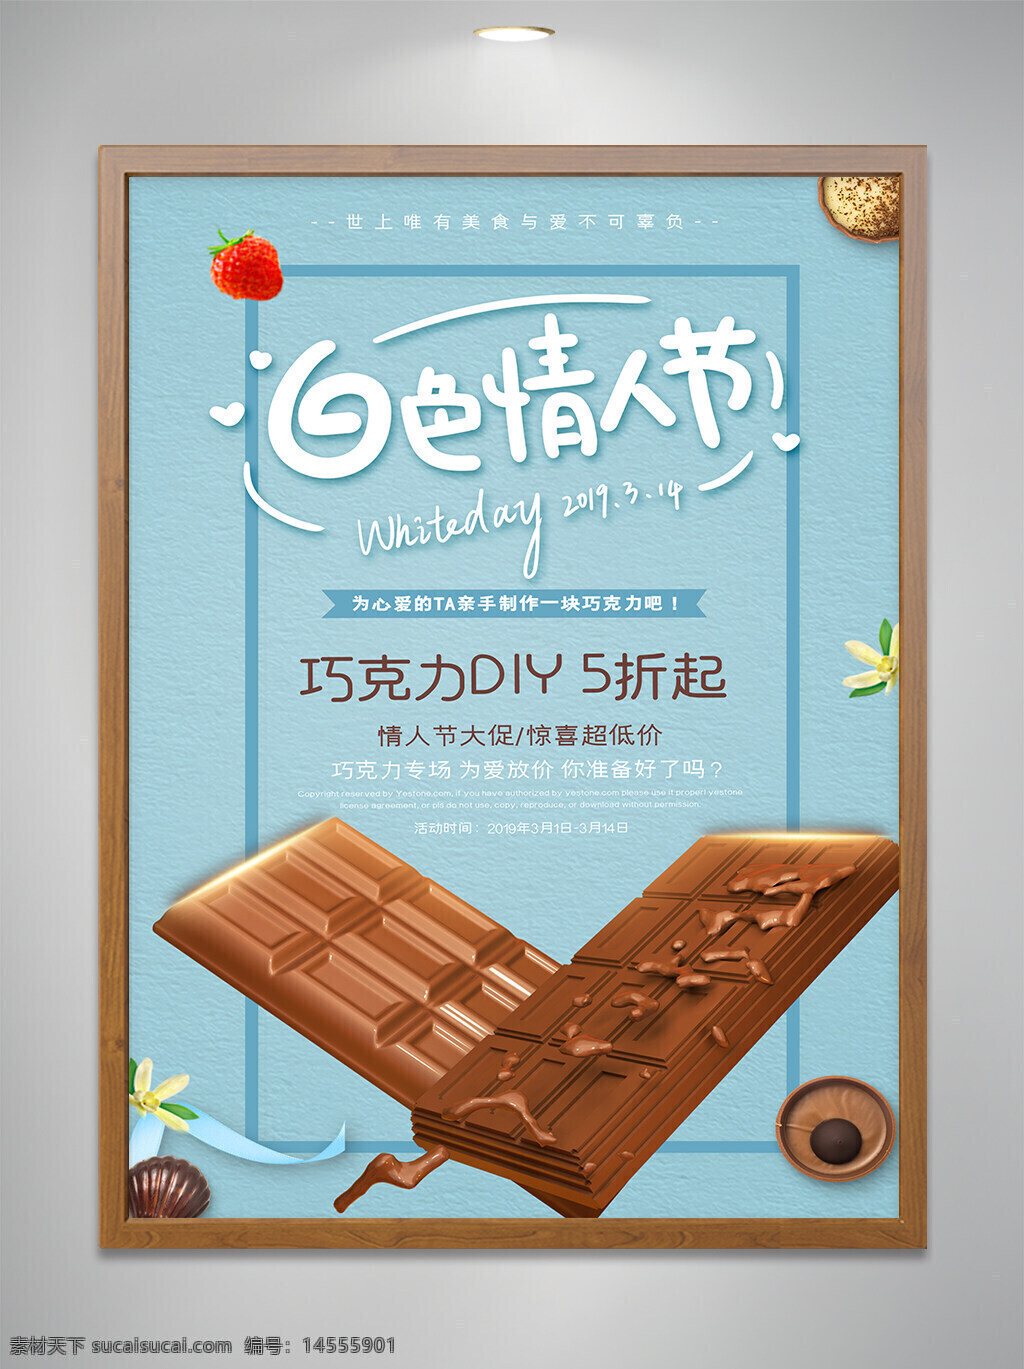 白色 情人节 巧克力 美食 宣传 海报 设计 diy 五折 折扣